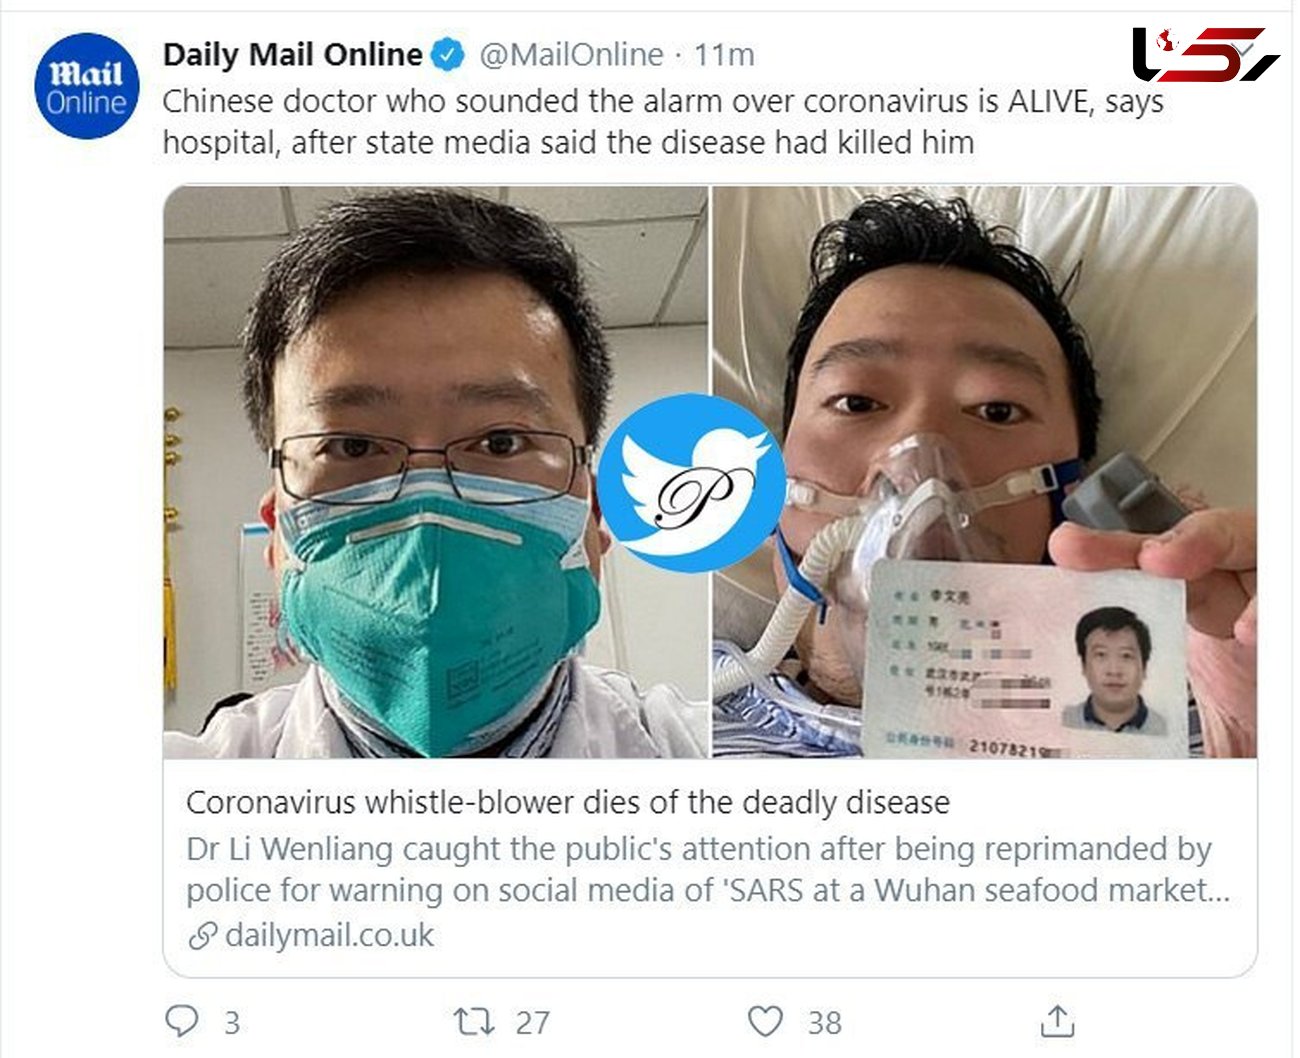 پزشک چینی که هشدار کورناویروس را داده بود زنده است + عکس